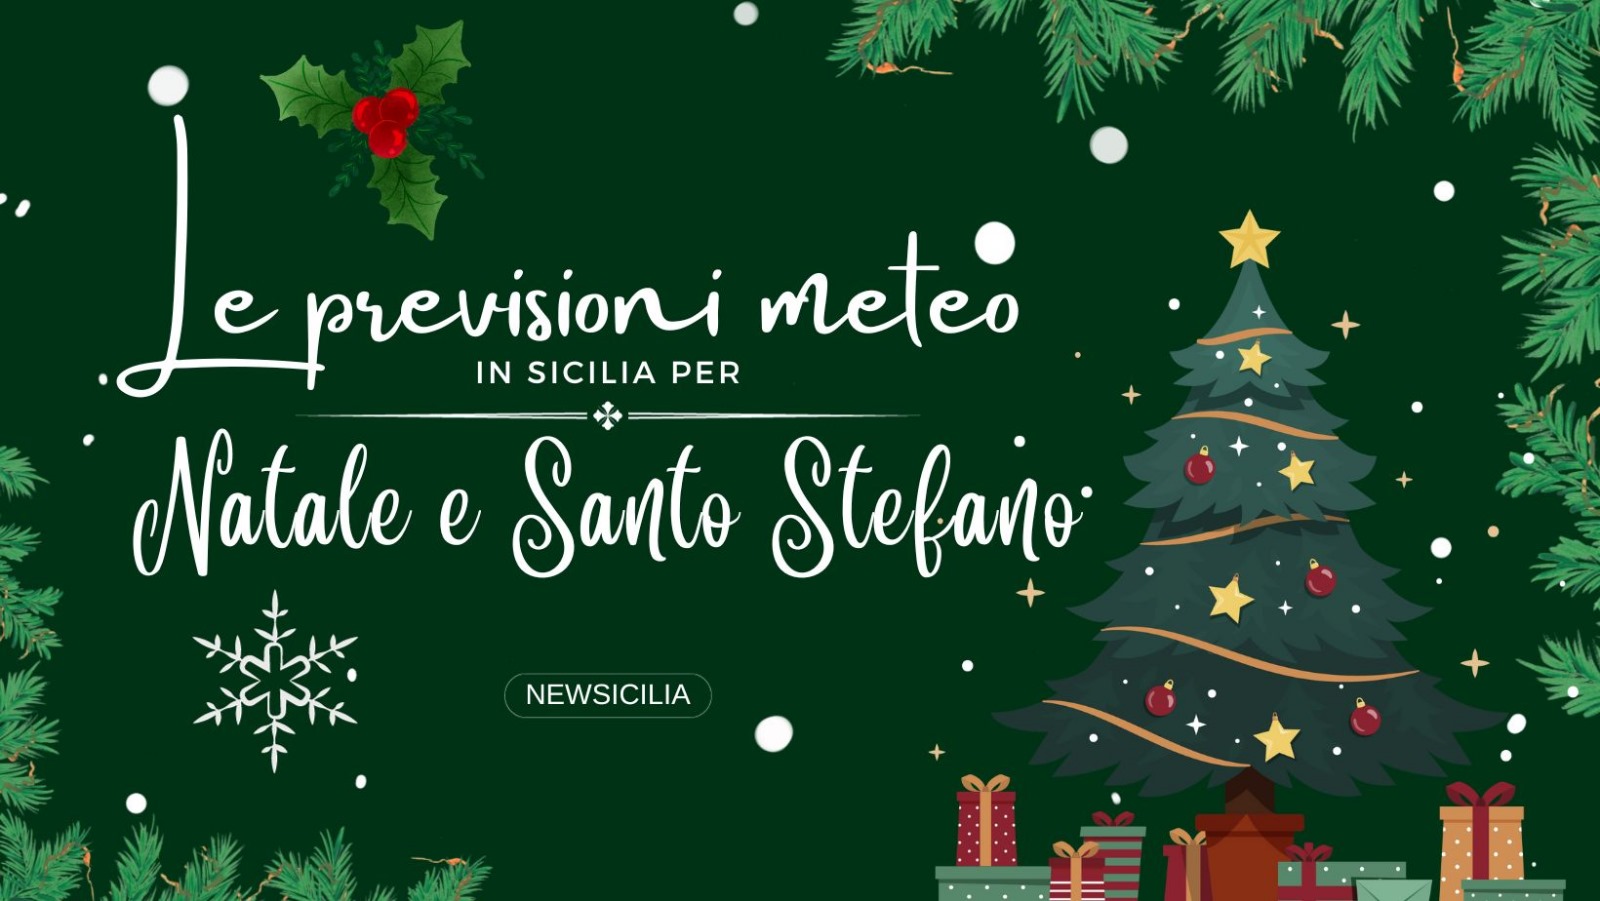 Meteo in Sicilia, le previsioni per Natale e Santo Stefano